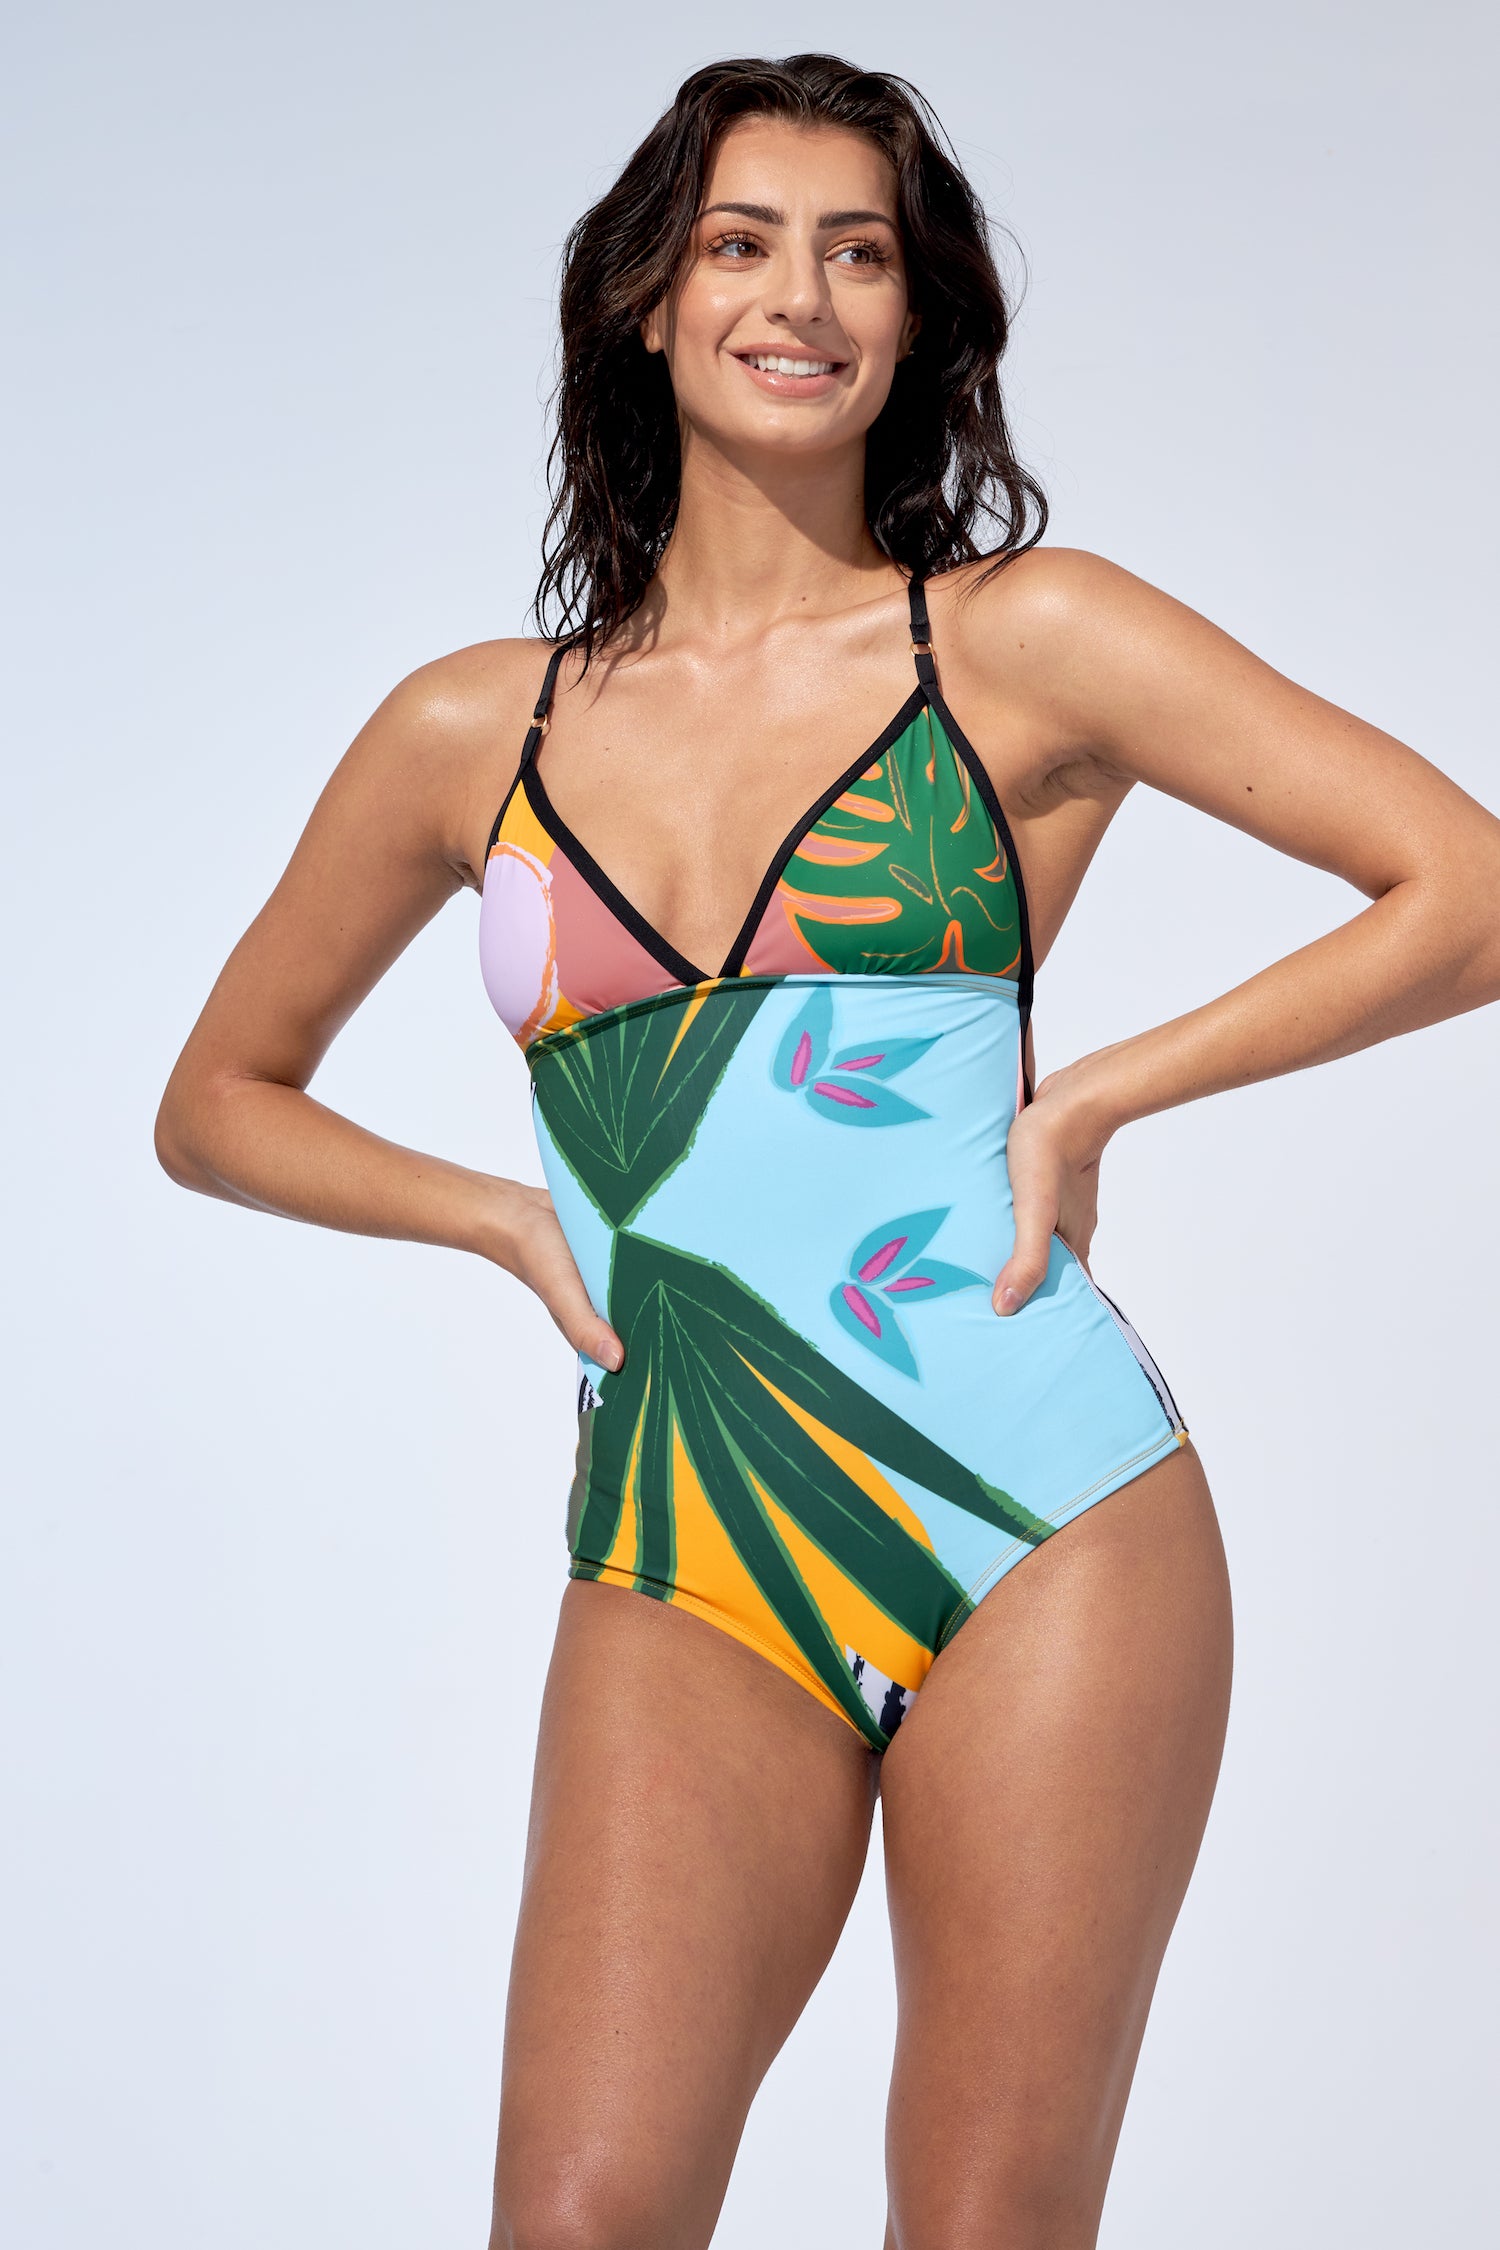 Print Floral One Piece Swimsuit Women Swimwear Monokini Long